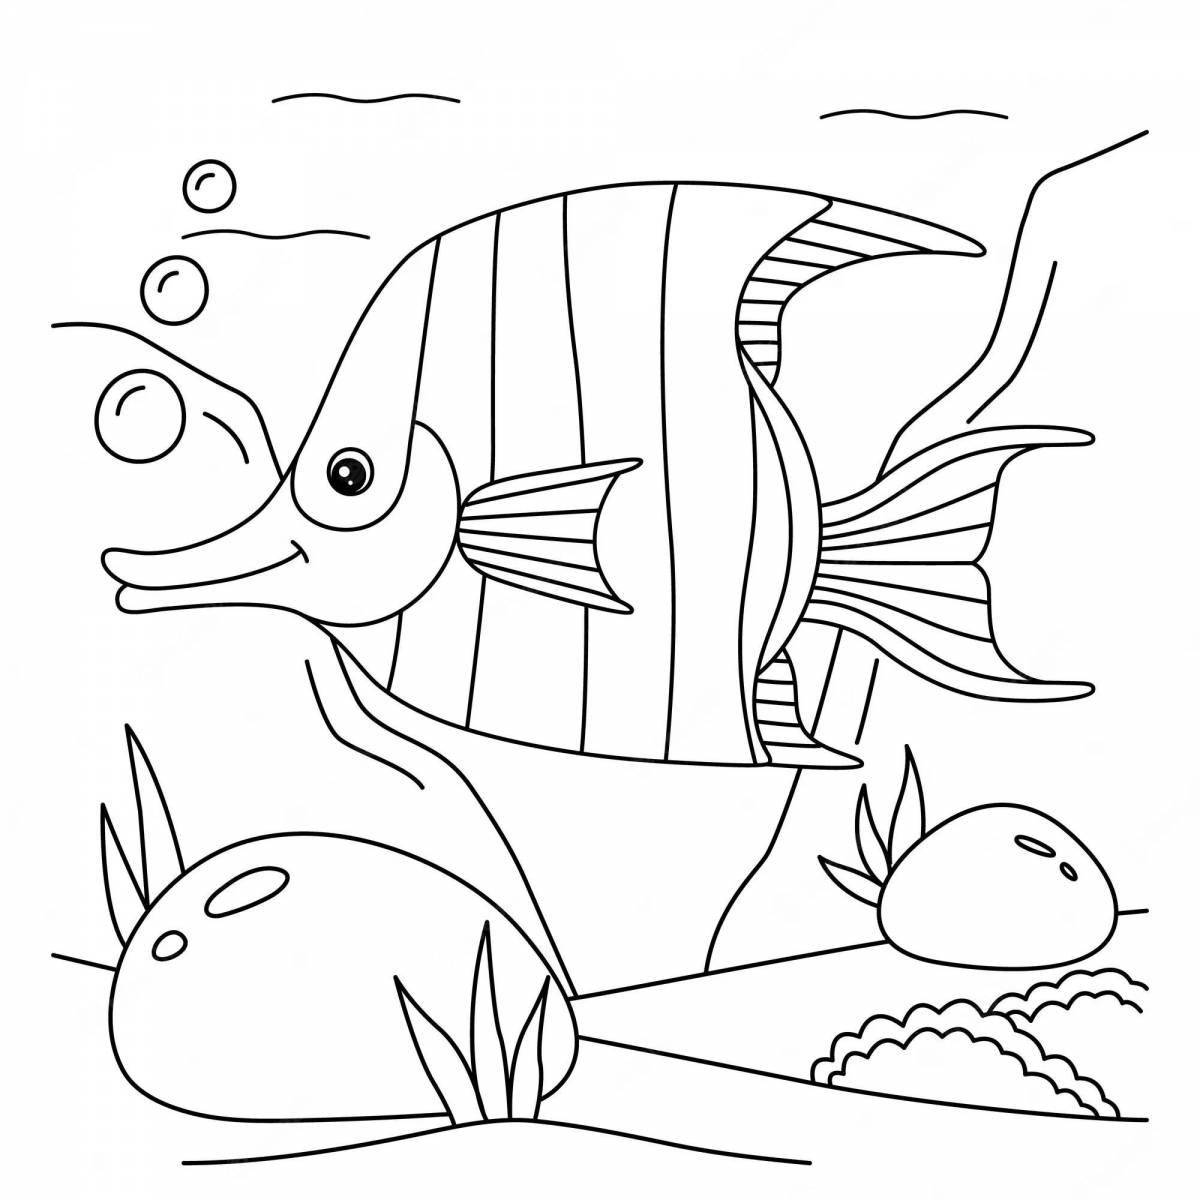 Удивительная страница-раскраска аквариума для детей 3-4 лет